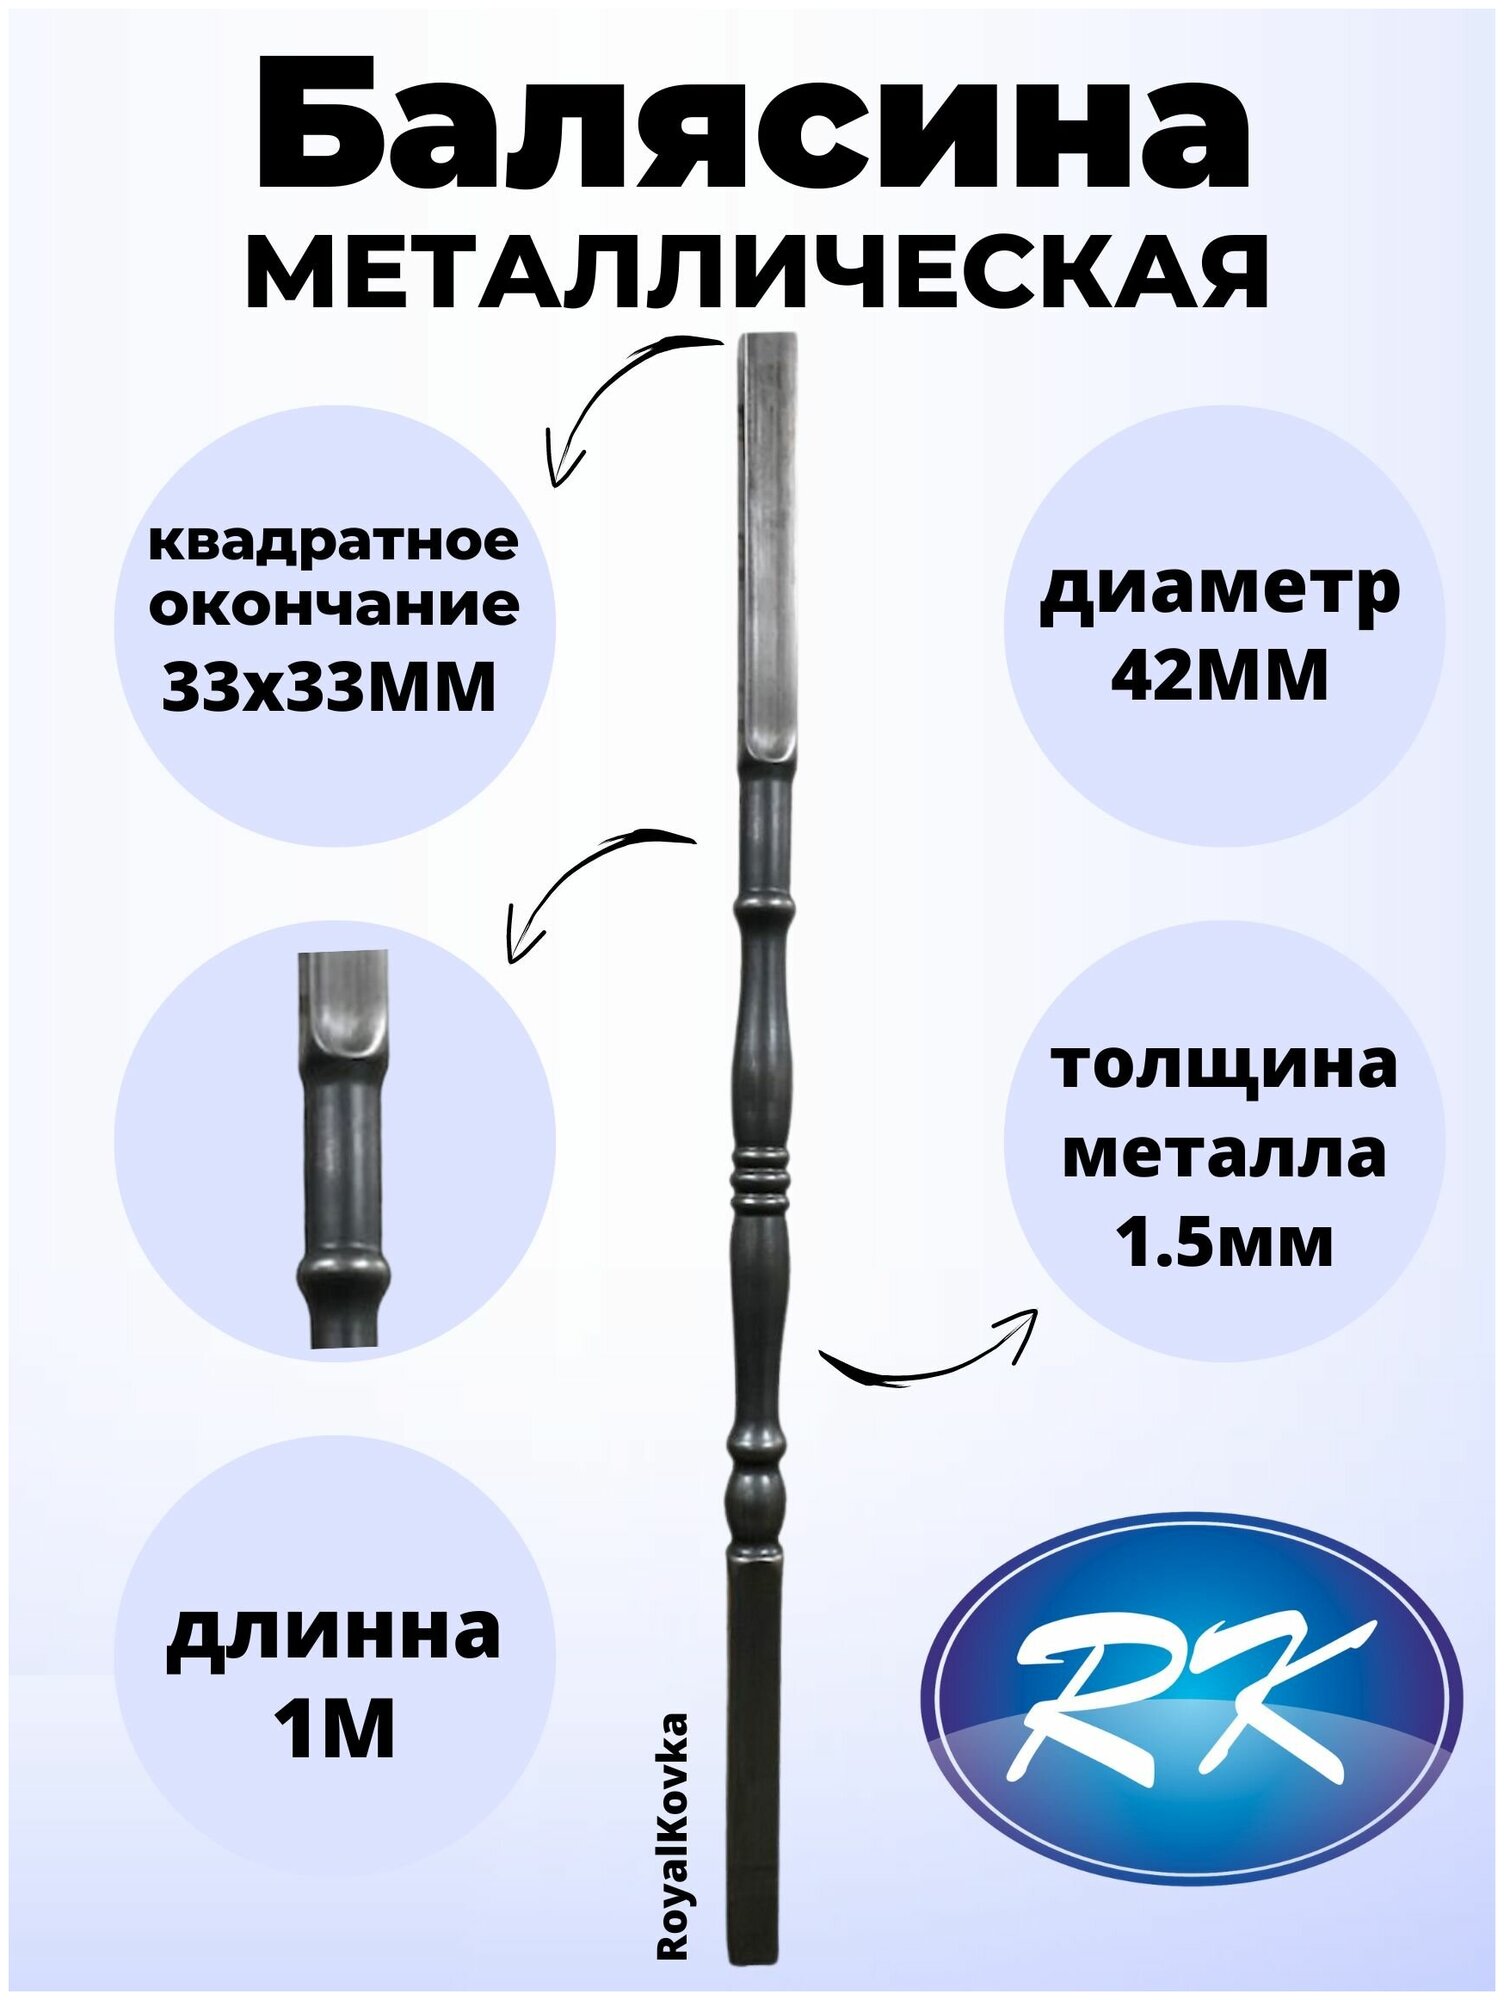 Балясина кованая металлическая Royal Kovka диаметр 42 мм квадратные окончания 33х33 мм арт. 33*33.4 КВ